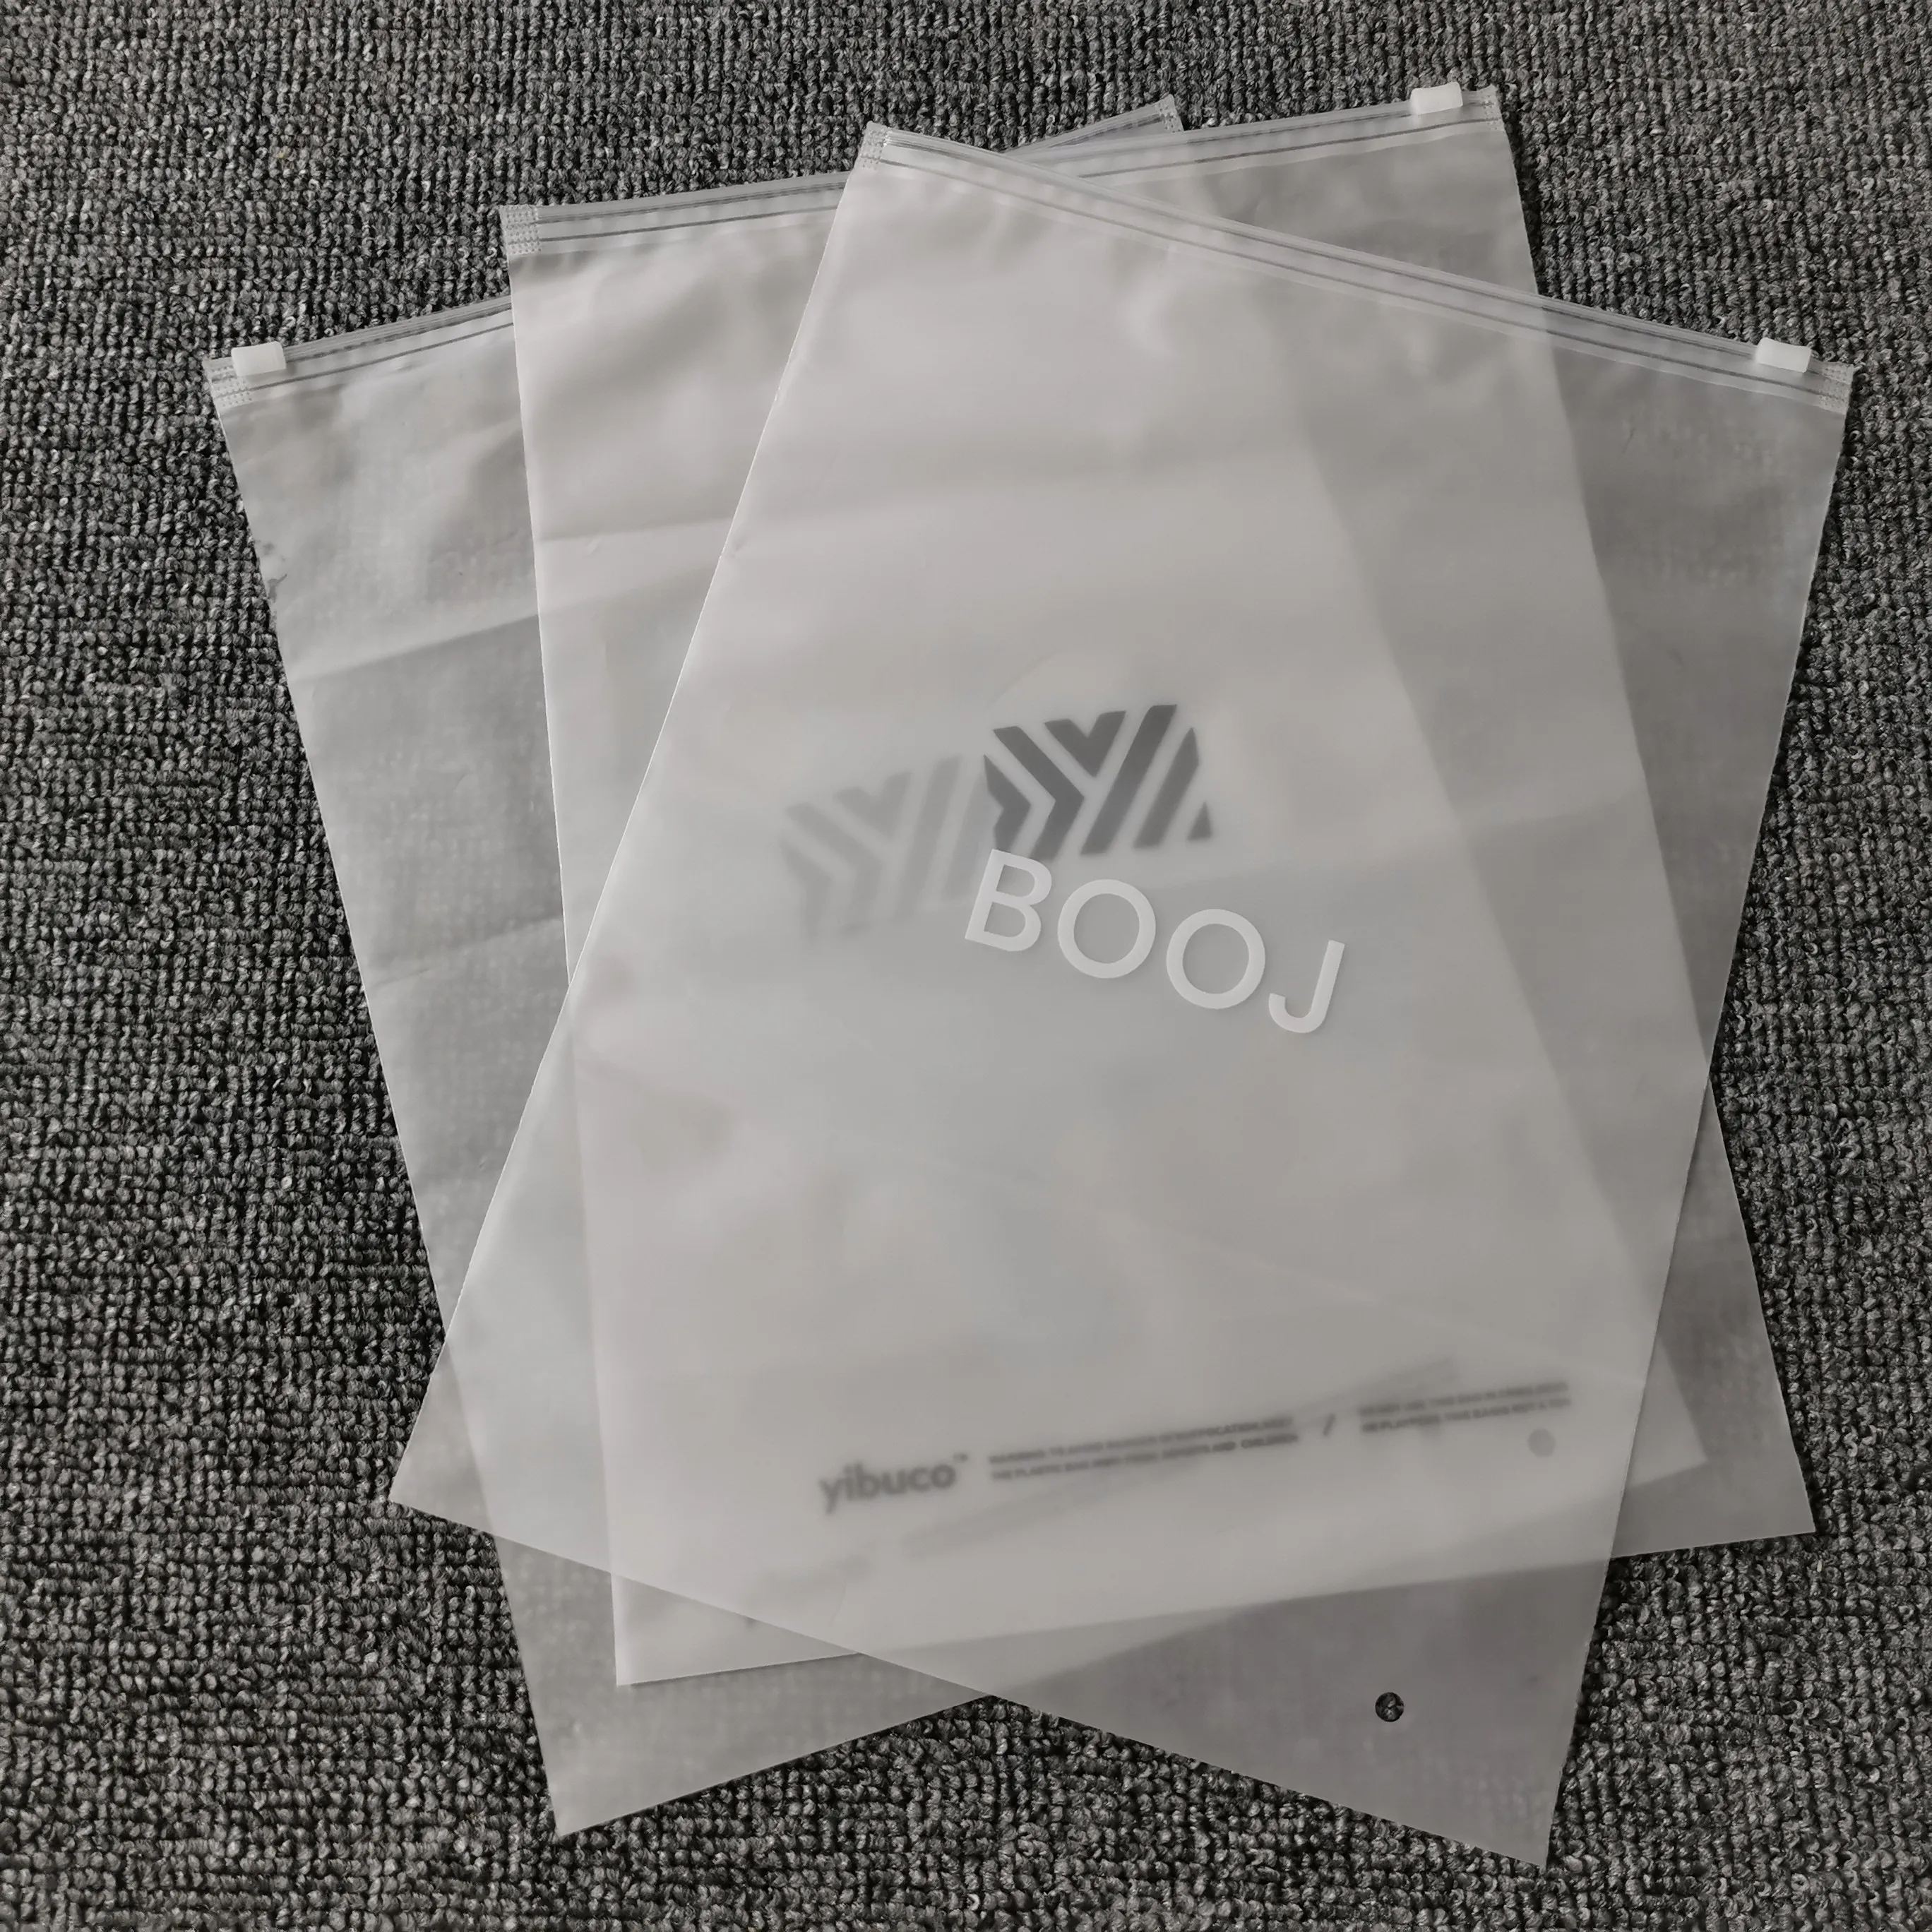 Small Ziplock Bags Zip, Small Zip Lock Bags Printed